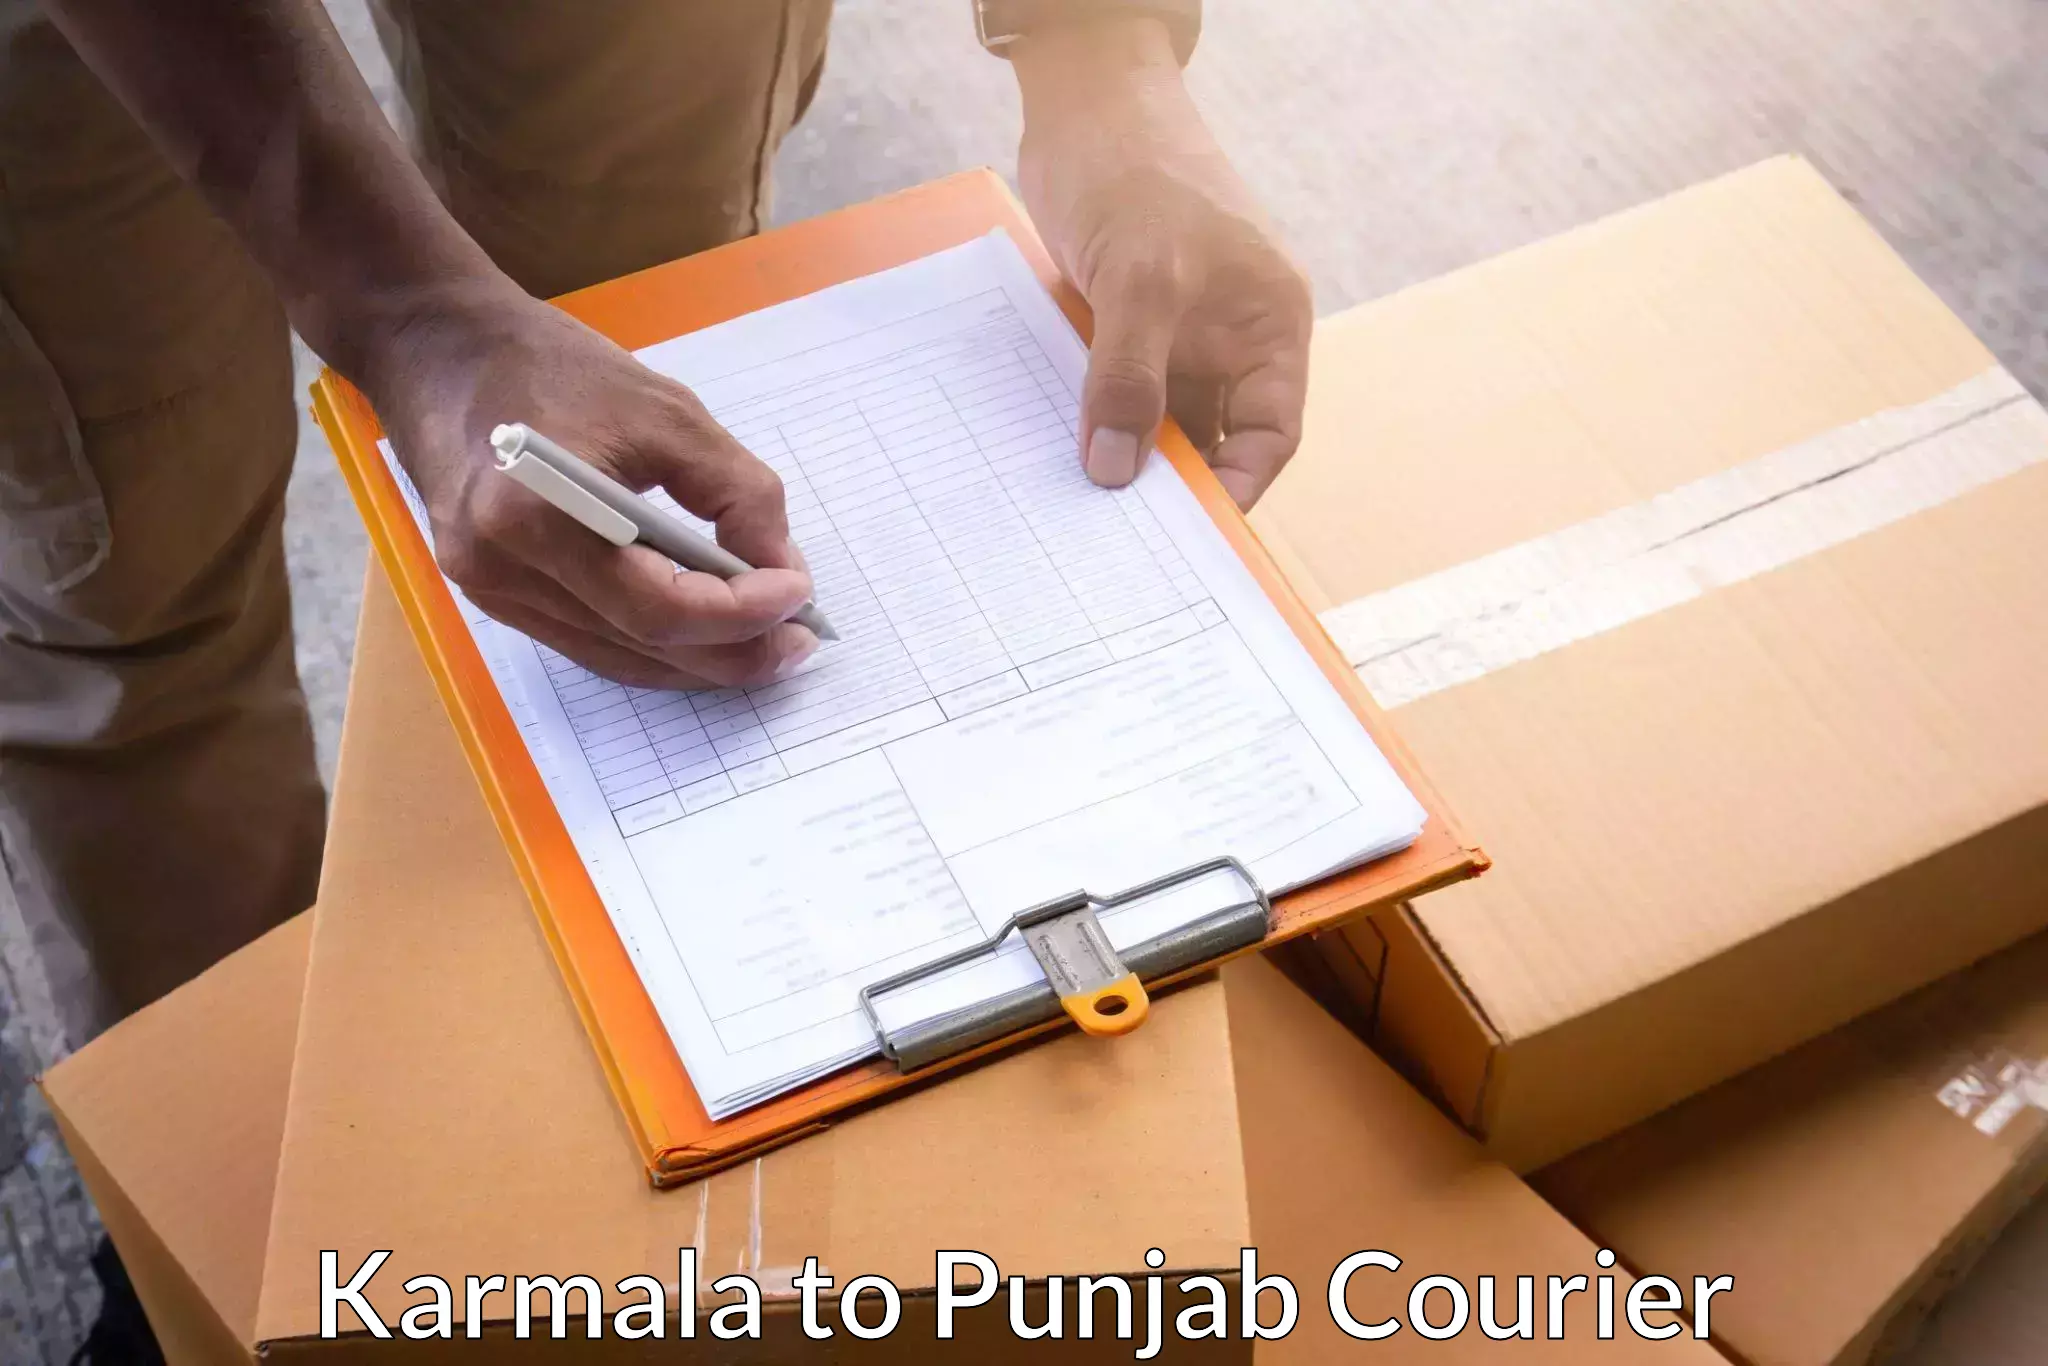 Efficient parcel tracking Karmala to Bathinda